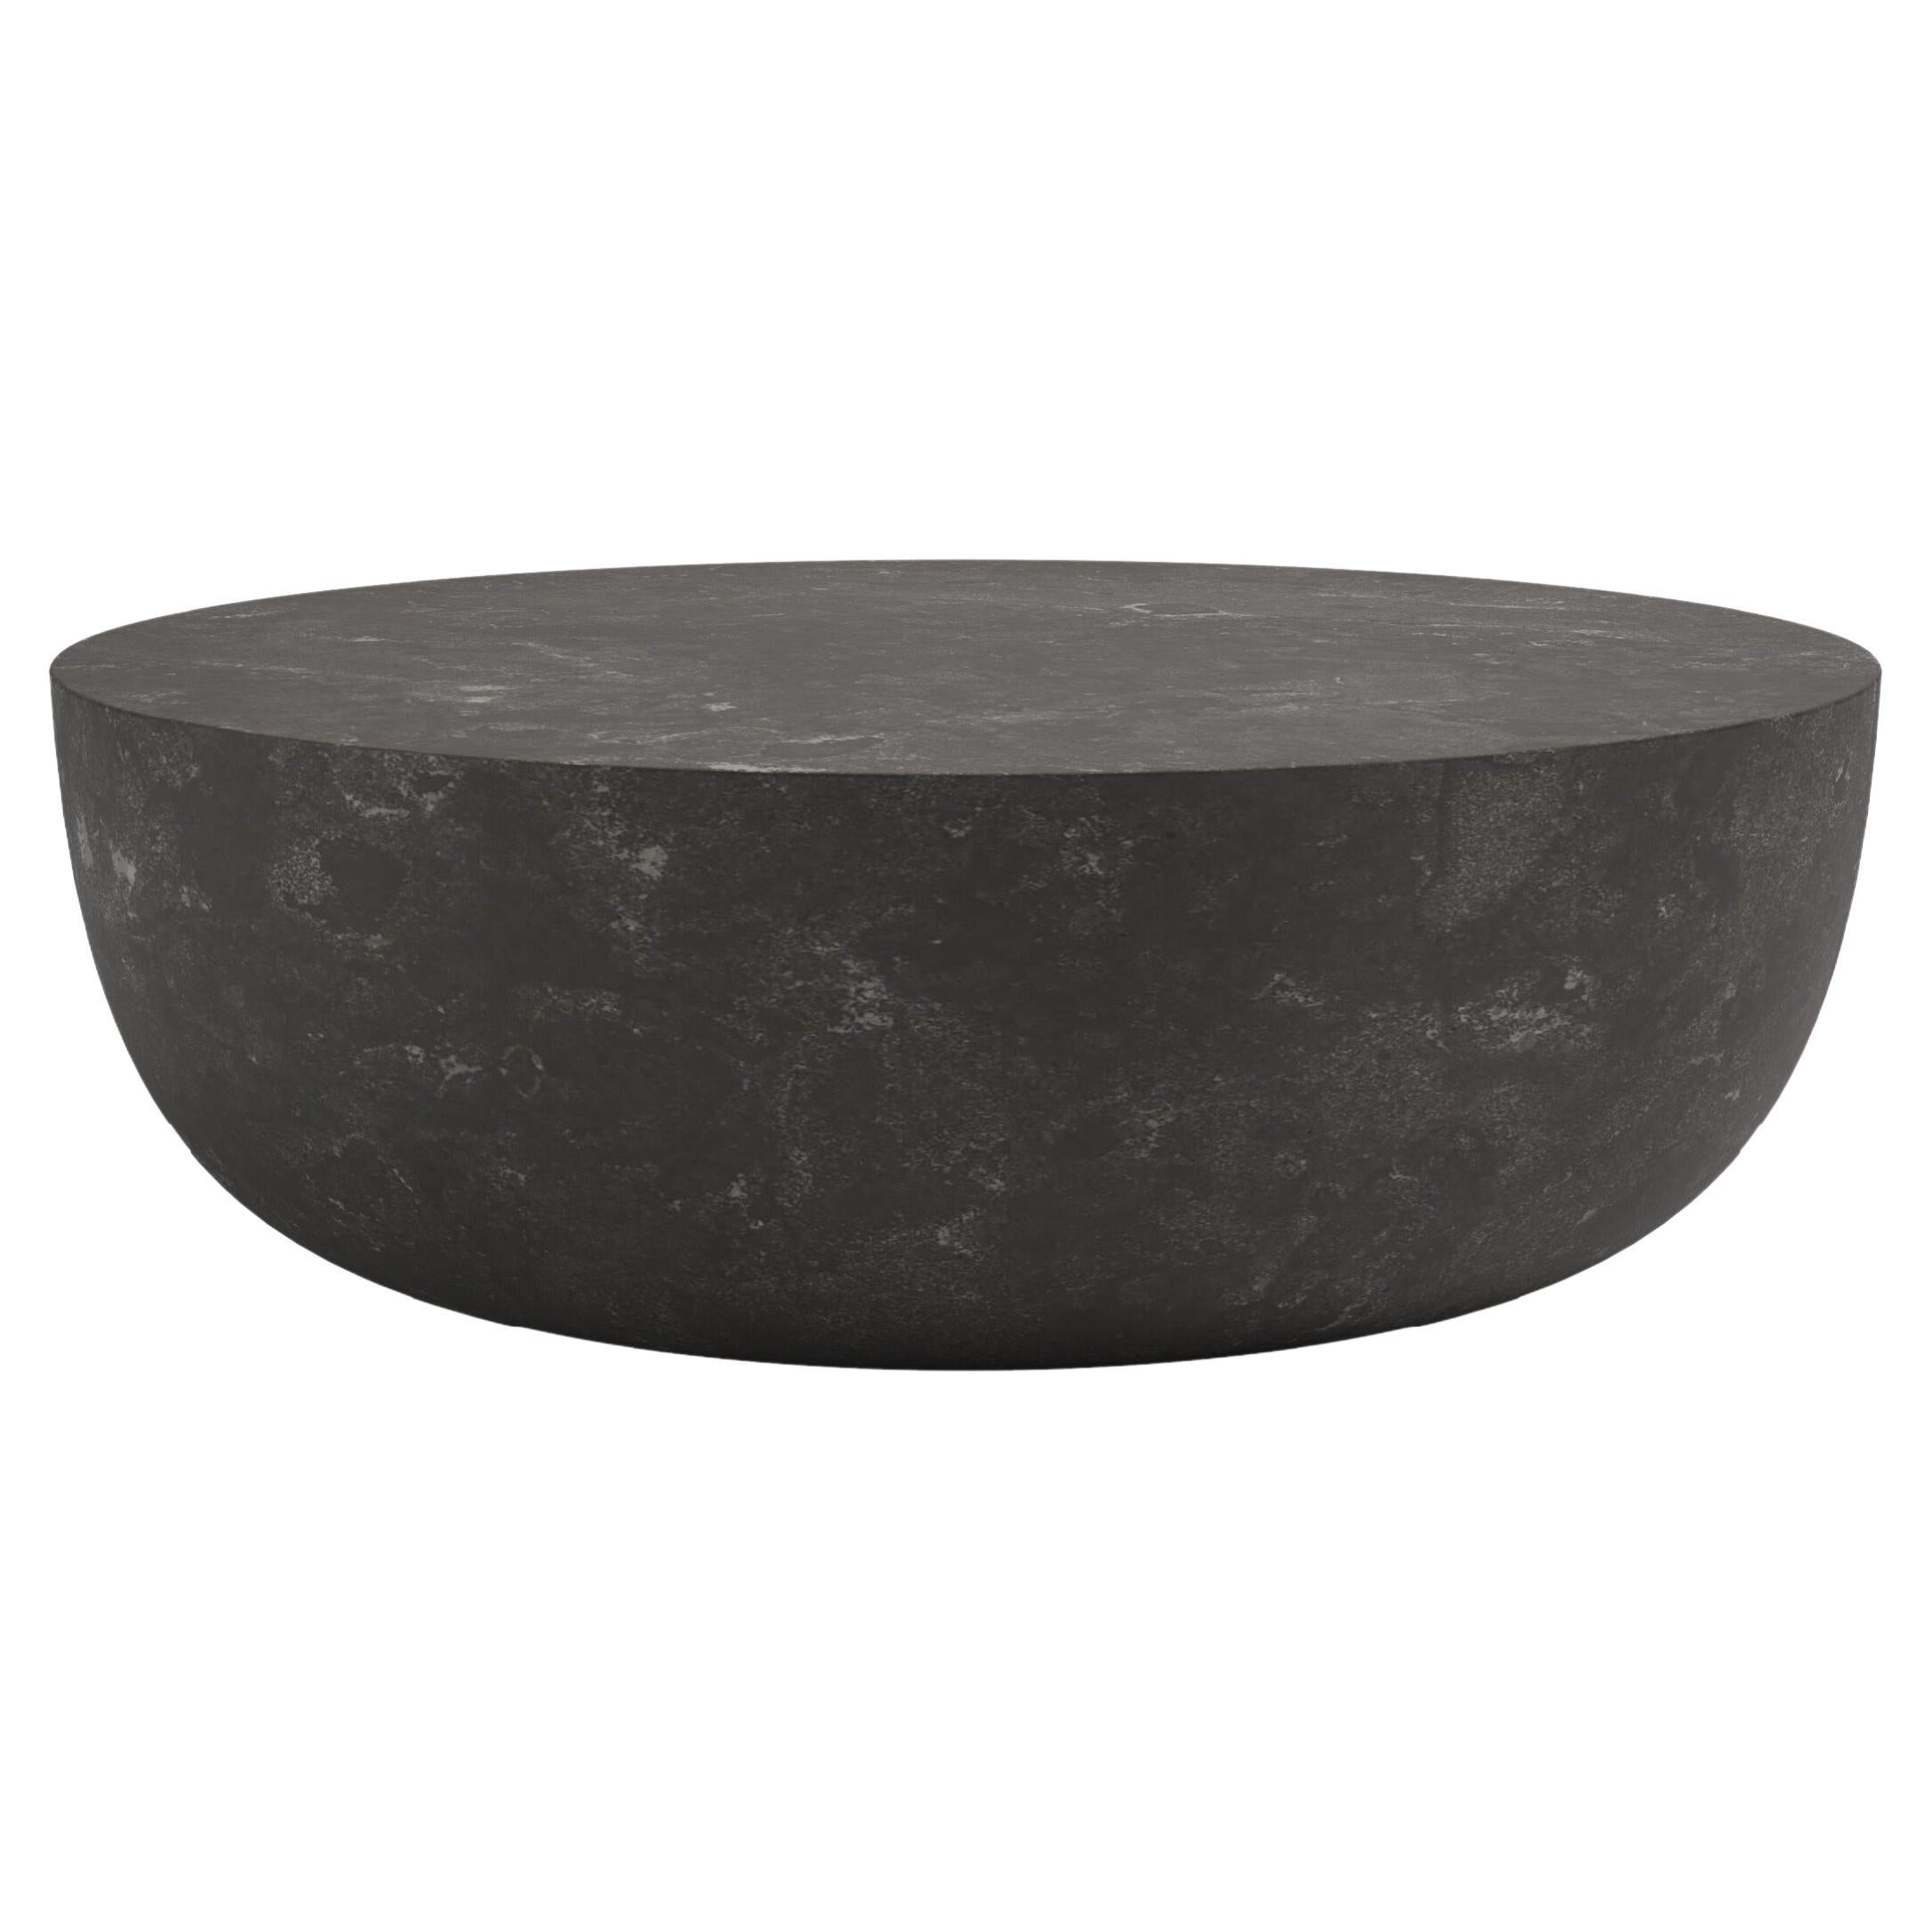 FORM(LA) Sfera Round Coffee Table 48”L x 48”W x 16”H Nero Petite Granite